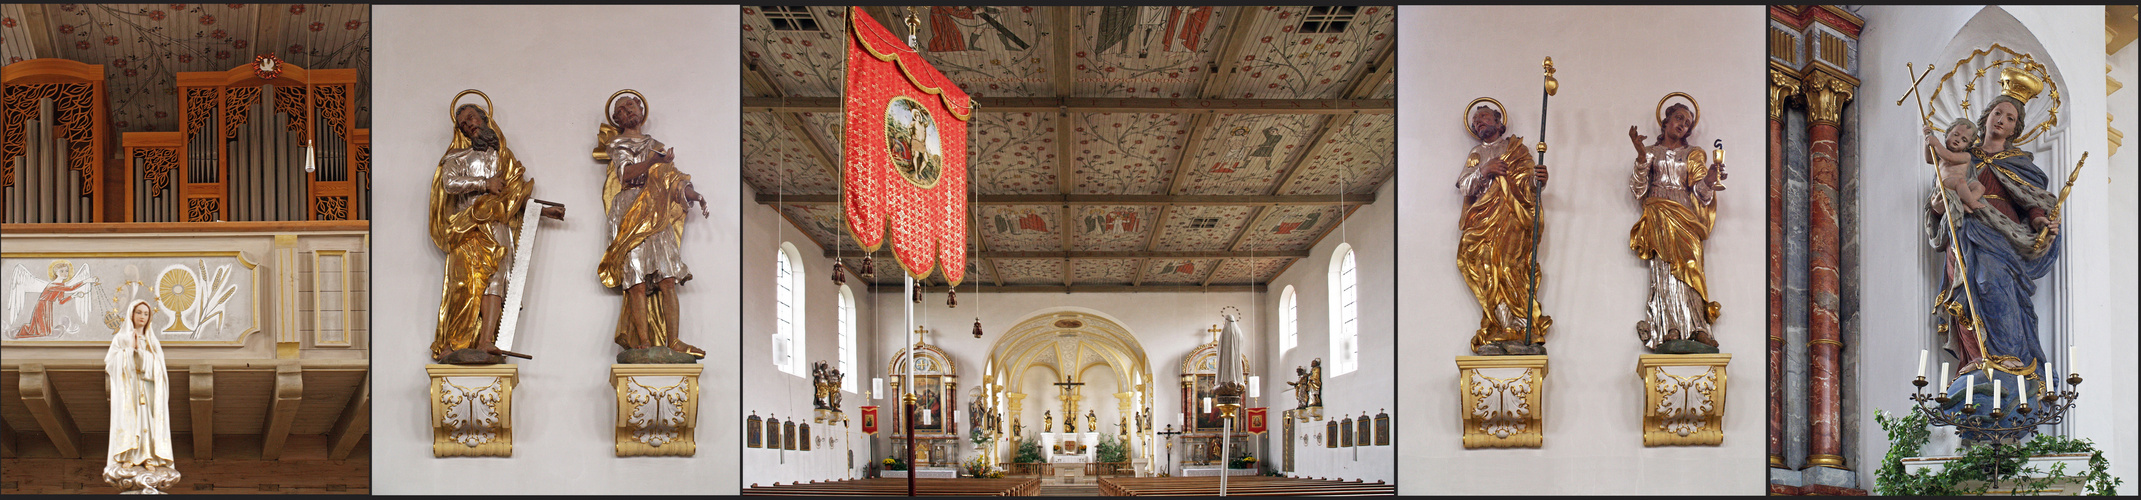 Détais de l’intérieur de l’Eglise de l’Immaculée Conception à Zusmarshausen